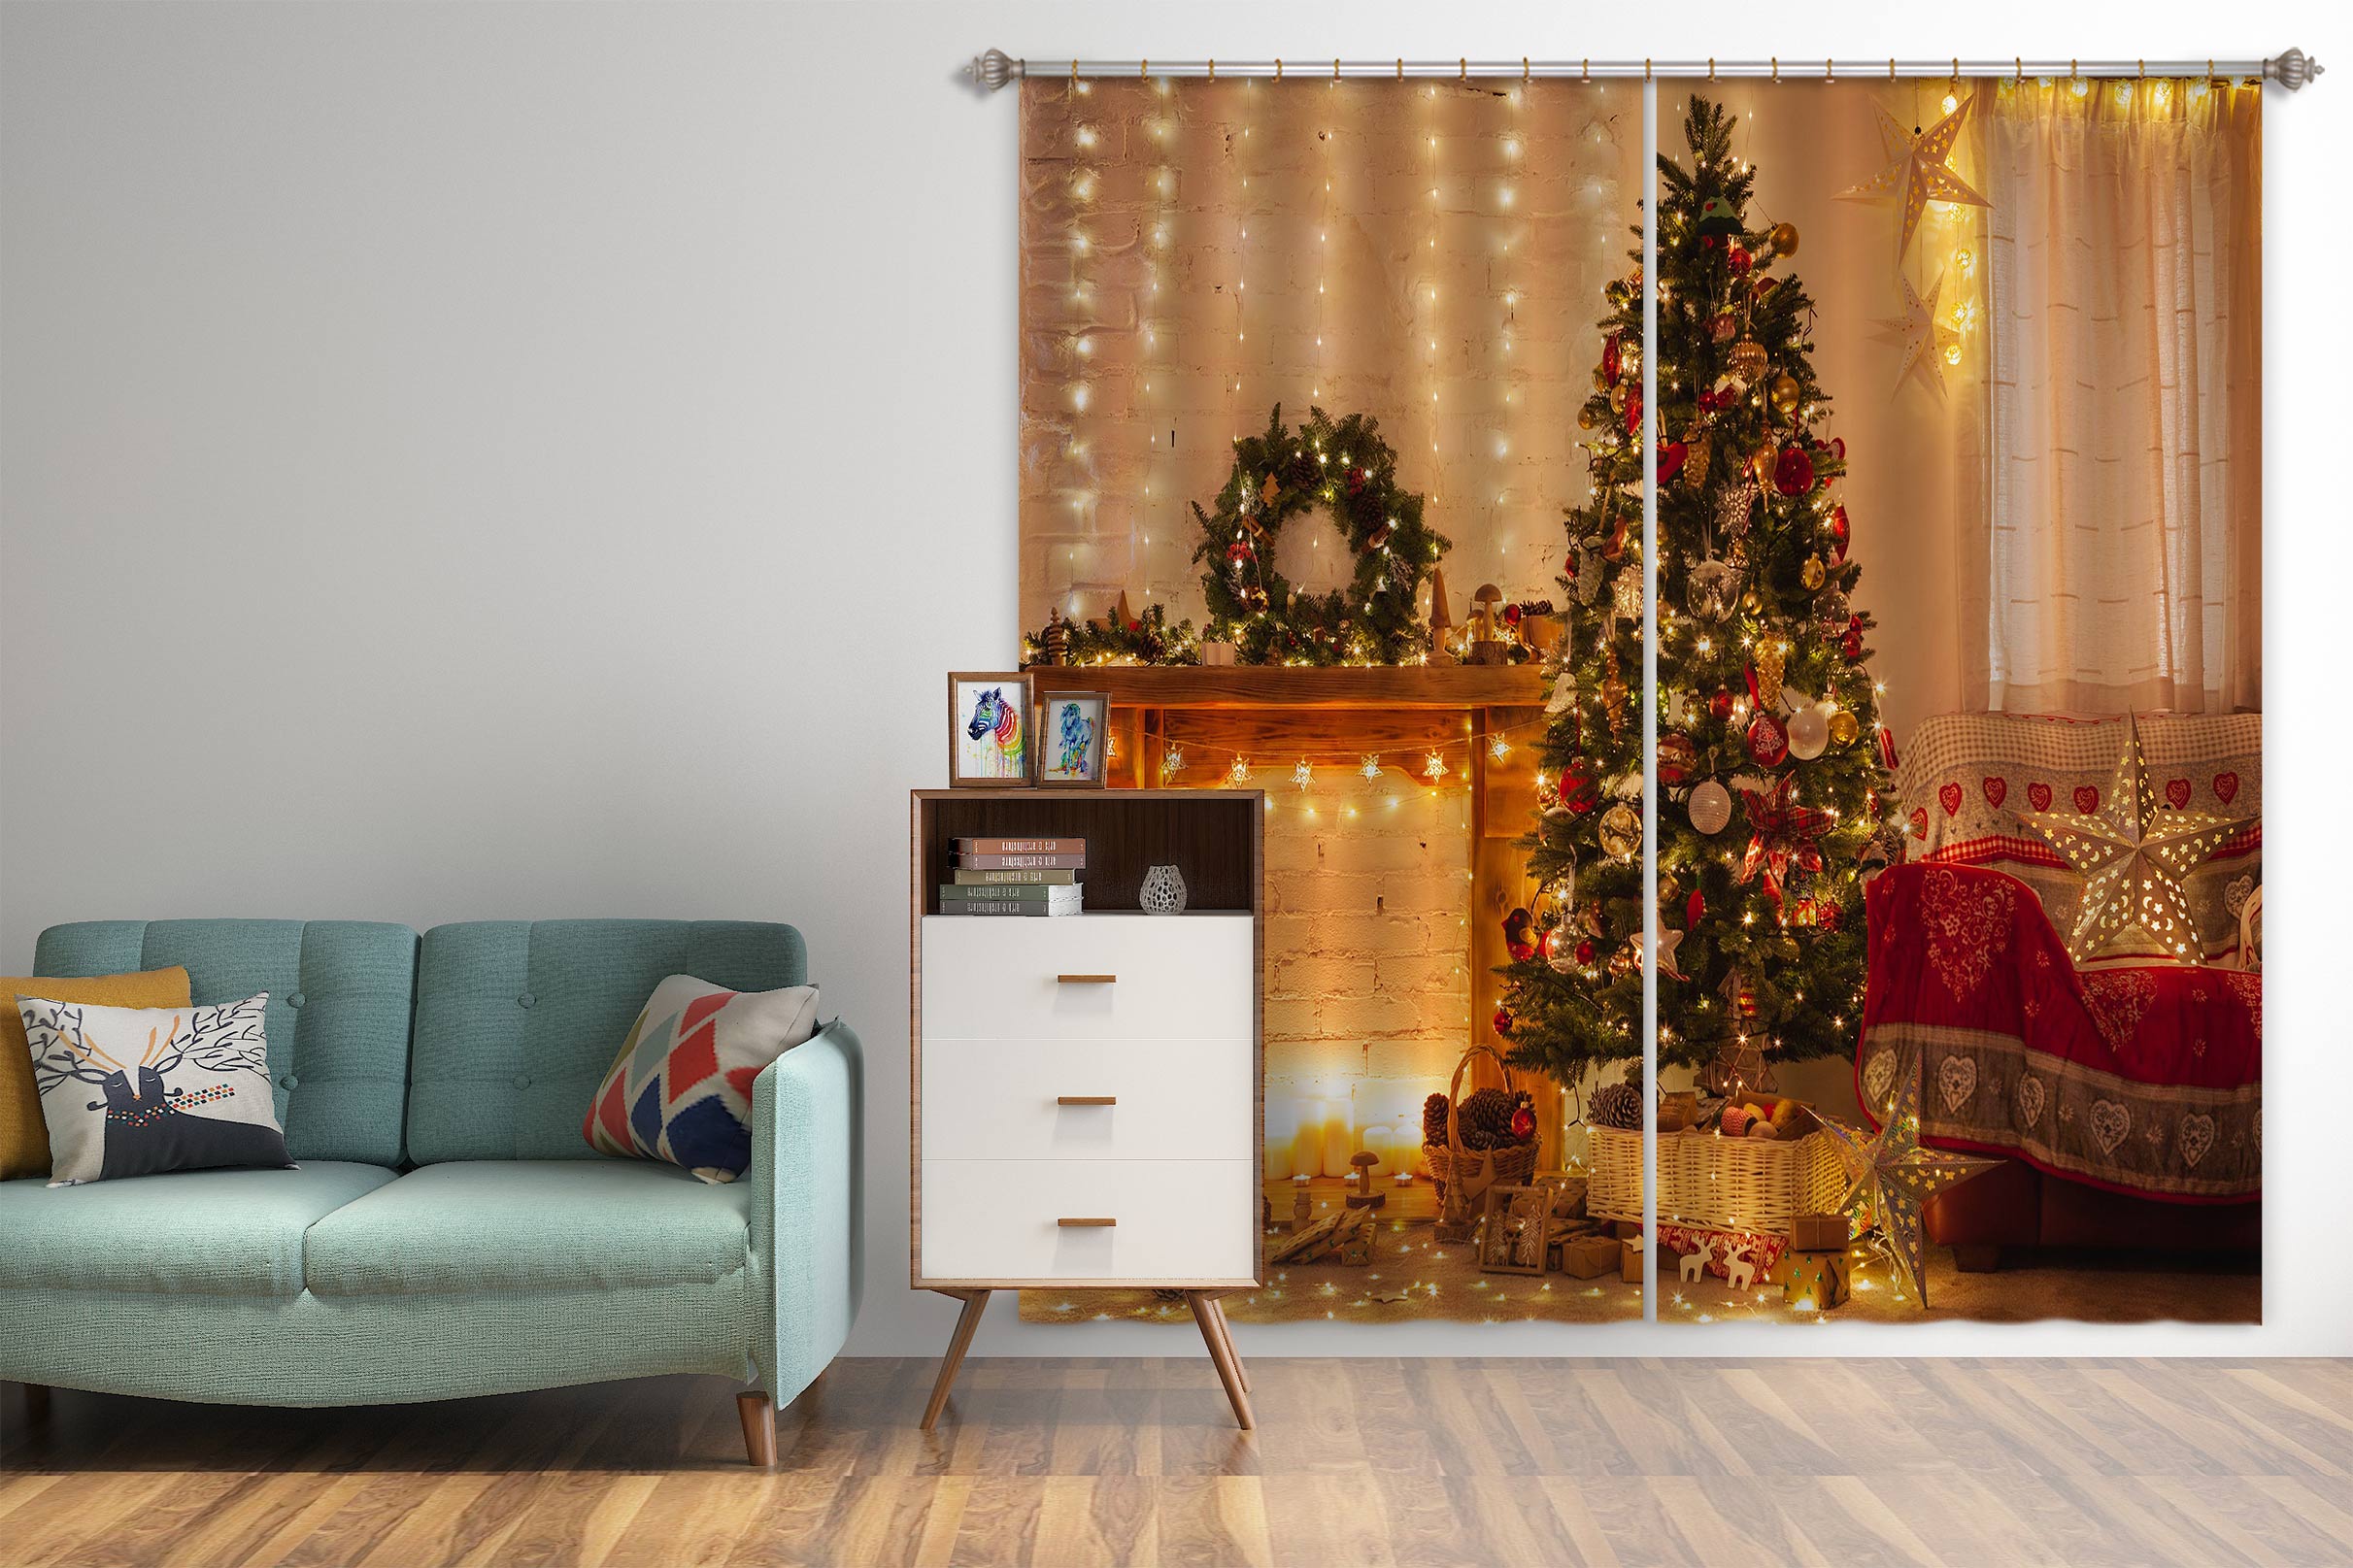 3D Fireplace Tree 52077 Christmas Curtains Drapes Xmas